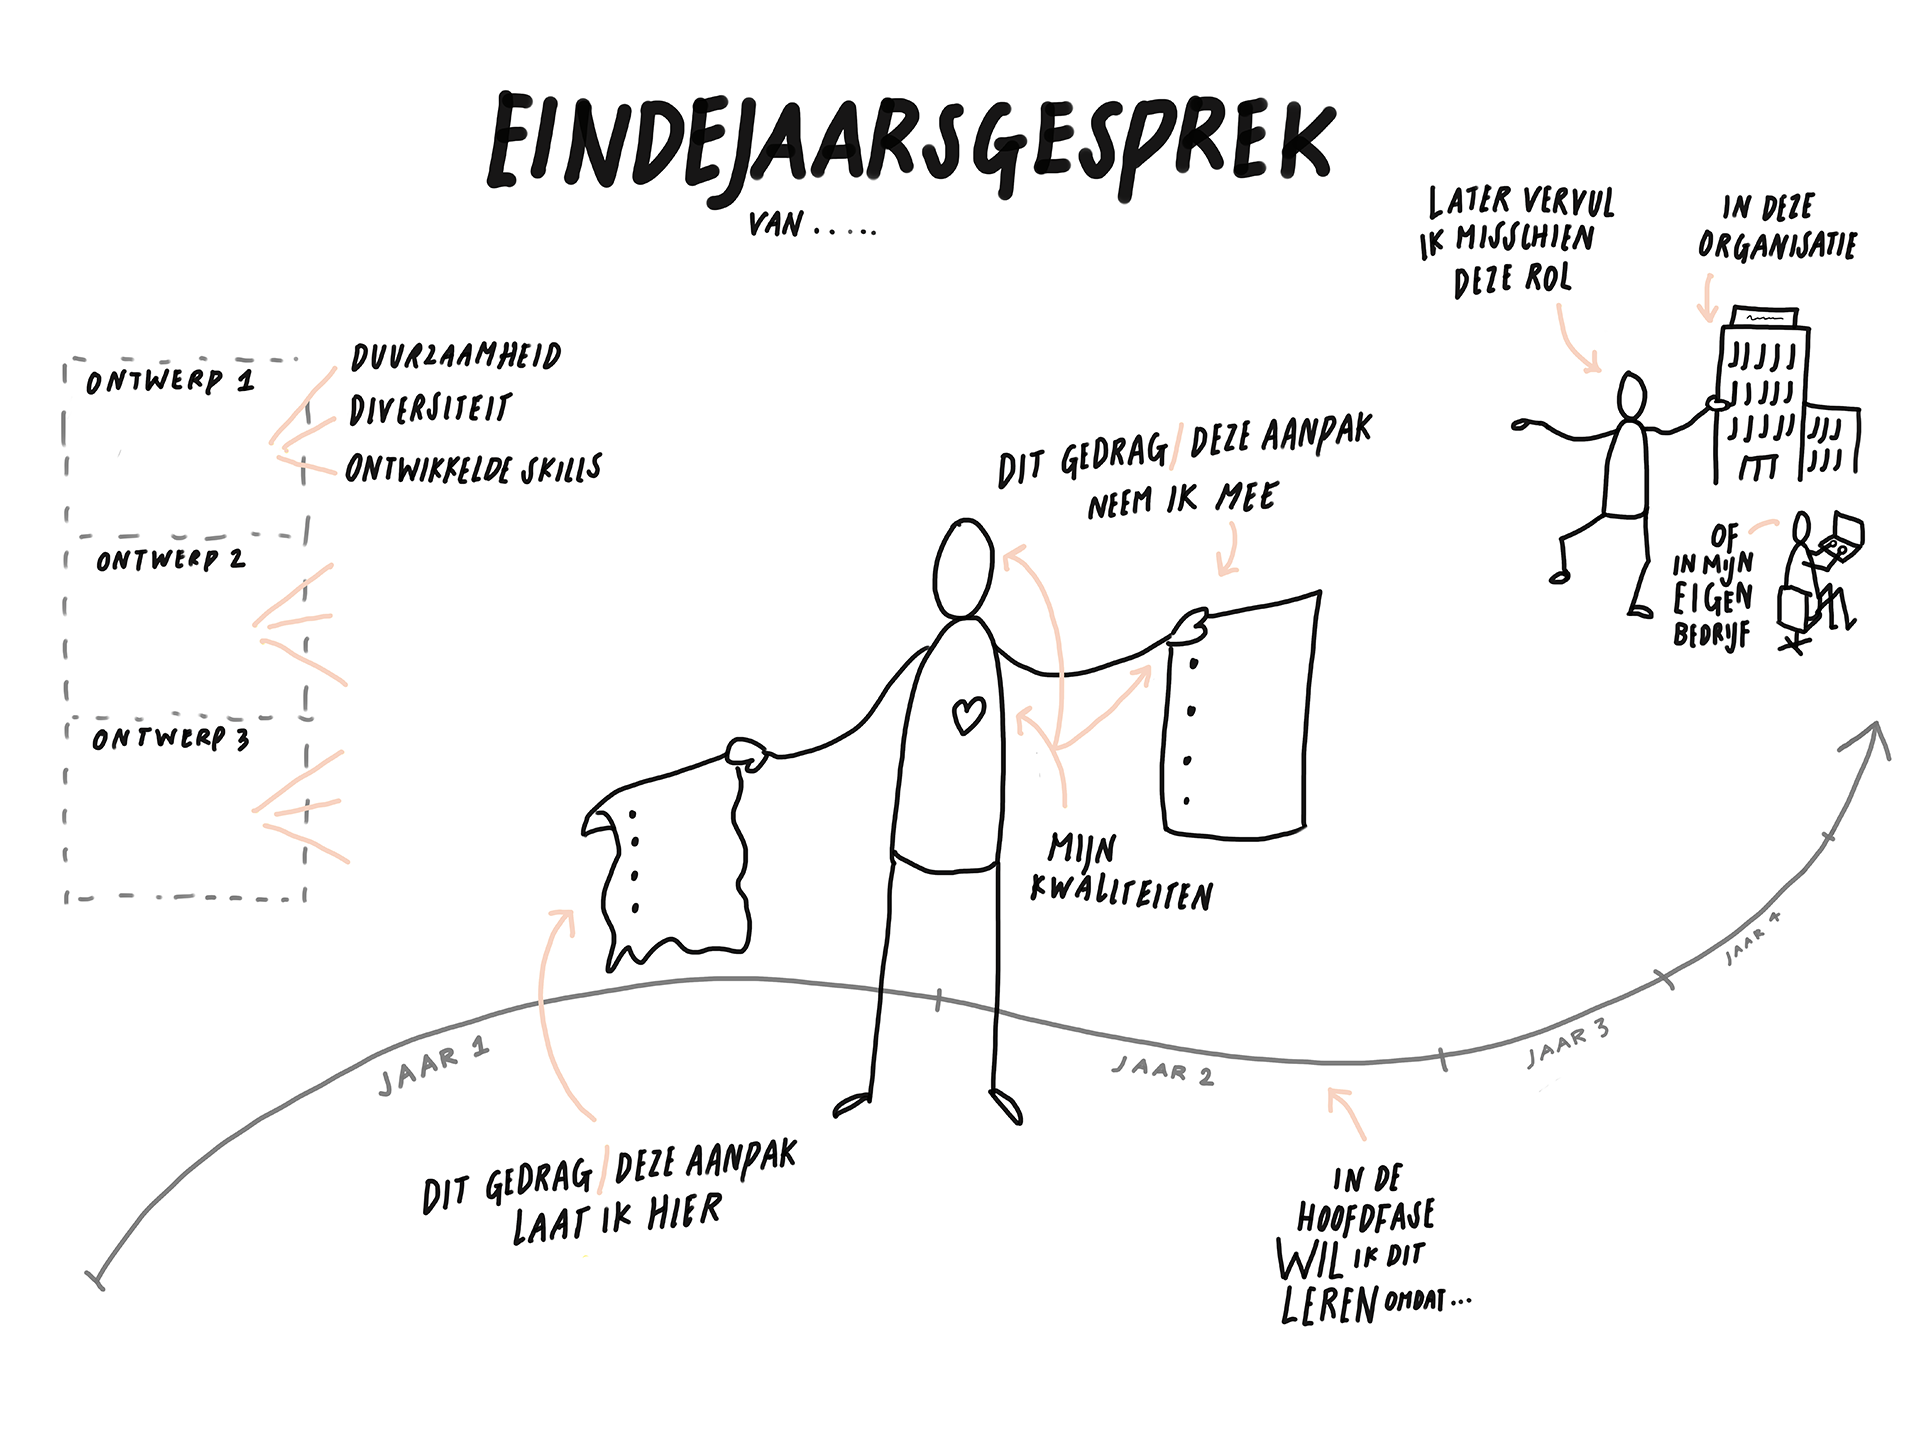 example of Eindejaarsgesprek